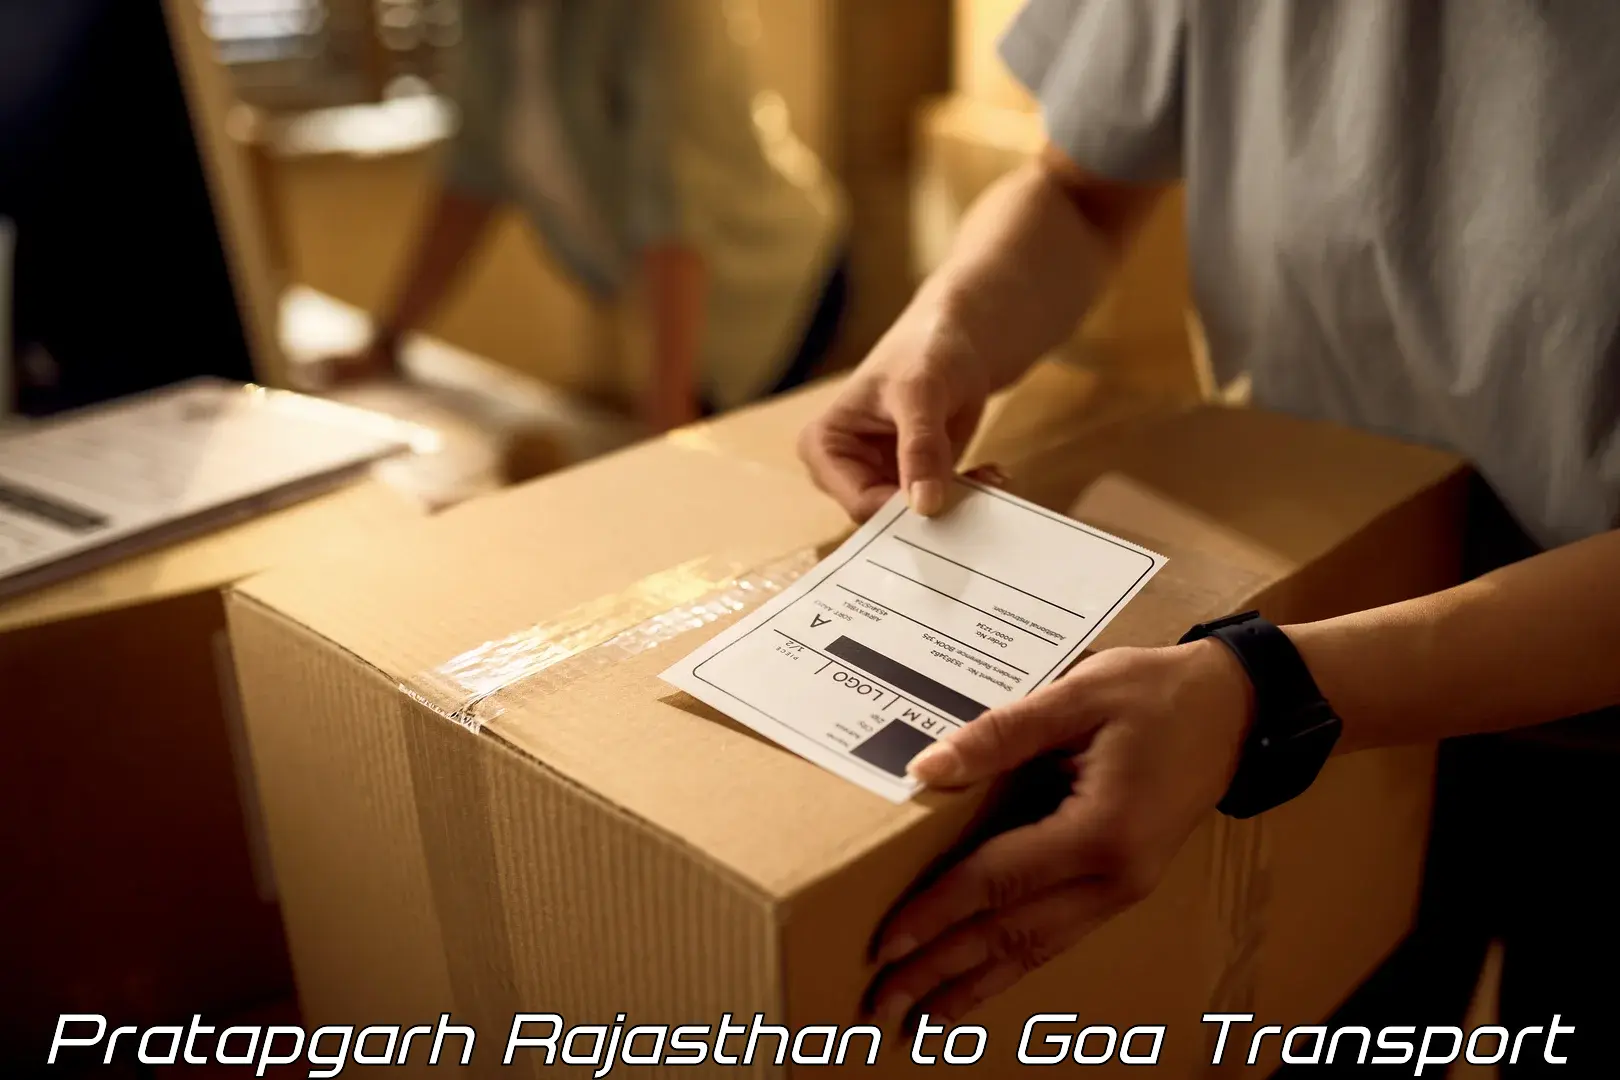 Commercial transport service Pratapgarh Rajasthan to Panjim